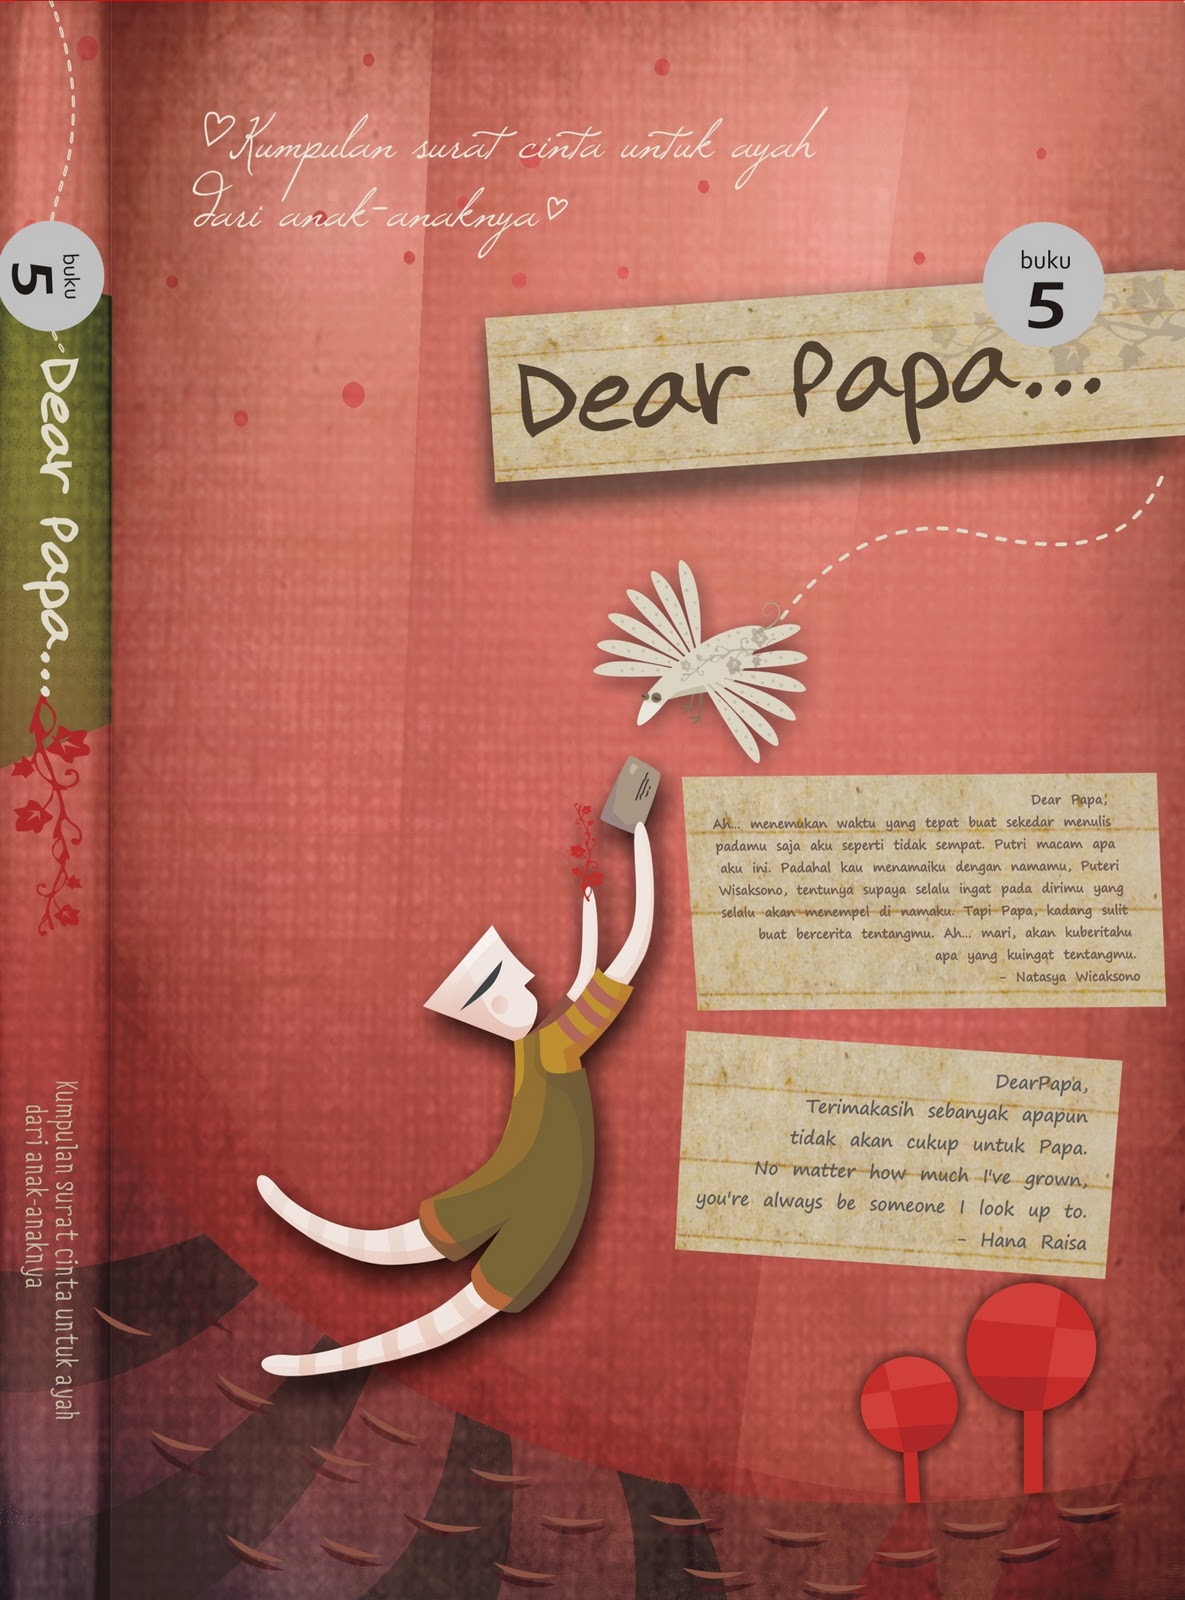 RIU Is ME Dear Papa 5 Kumpulan Surat Cinta Untuk Ayah Dari